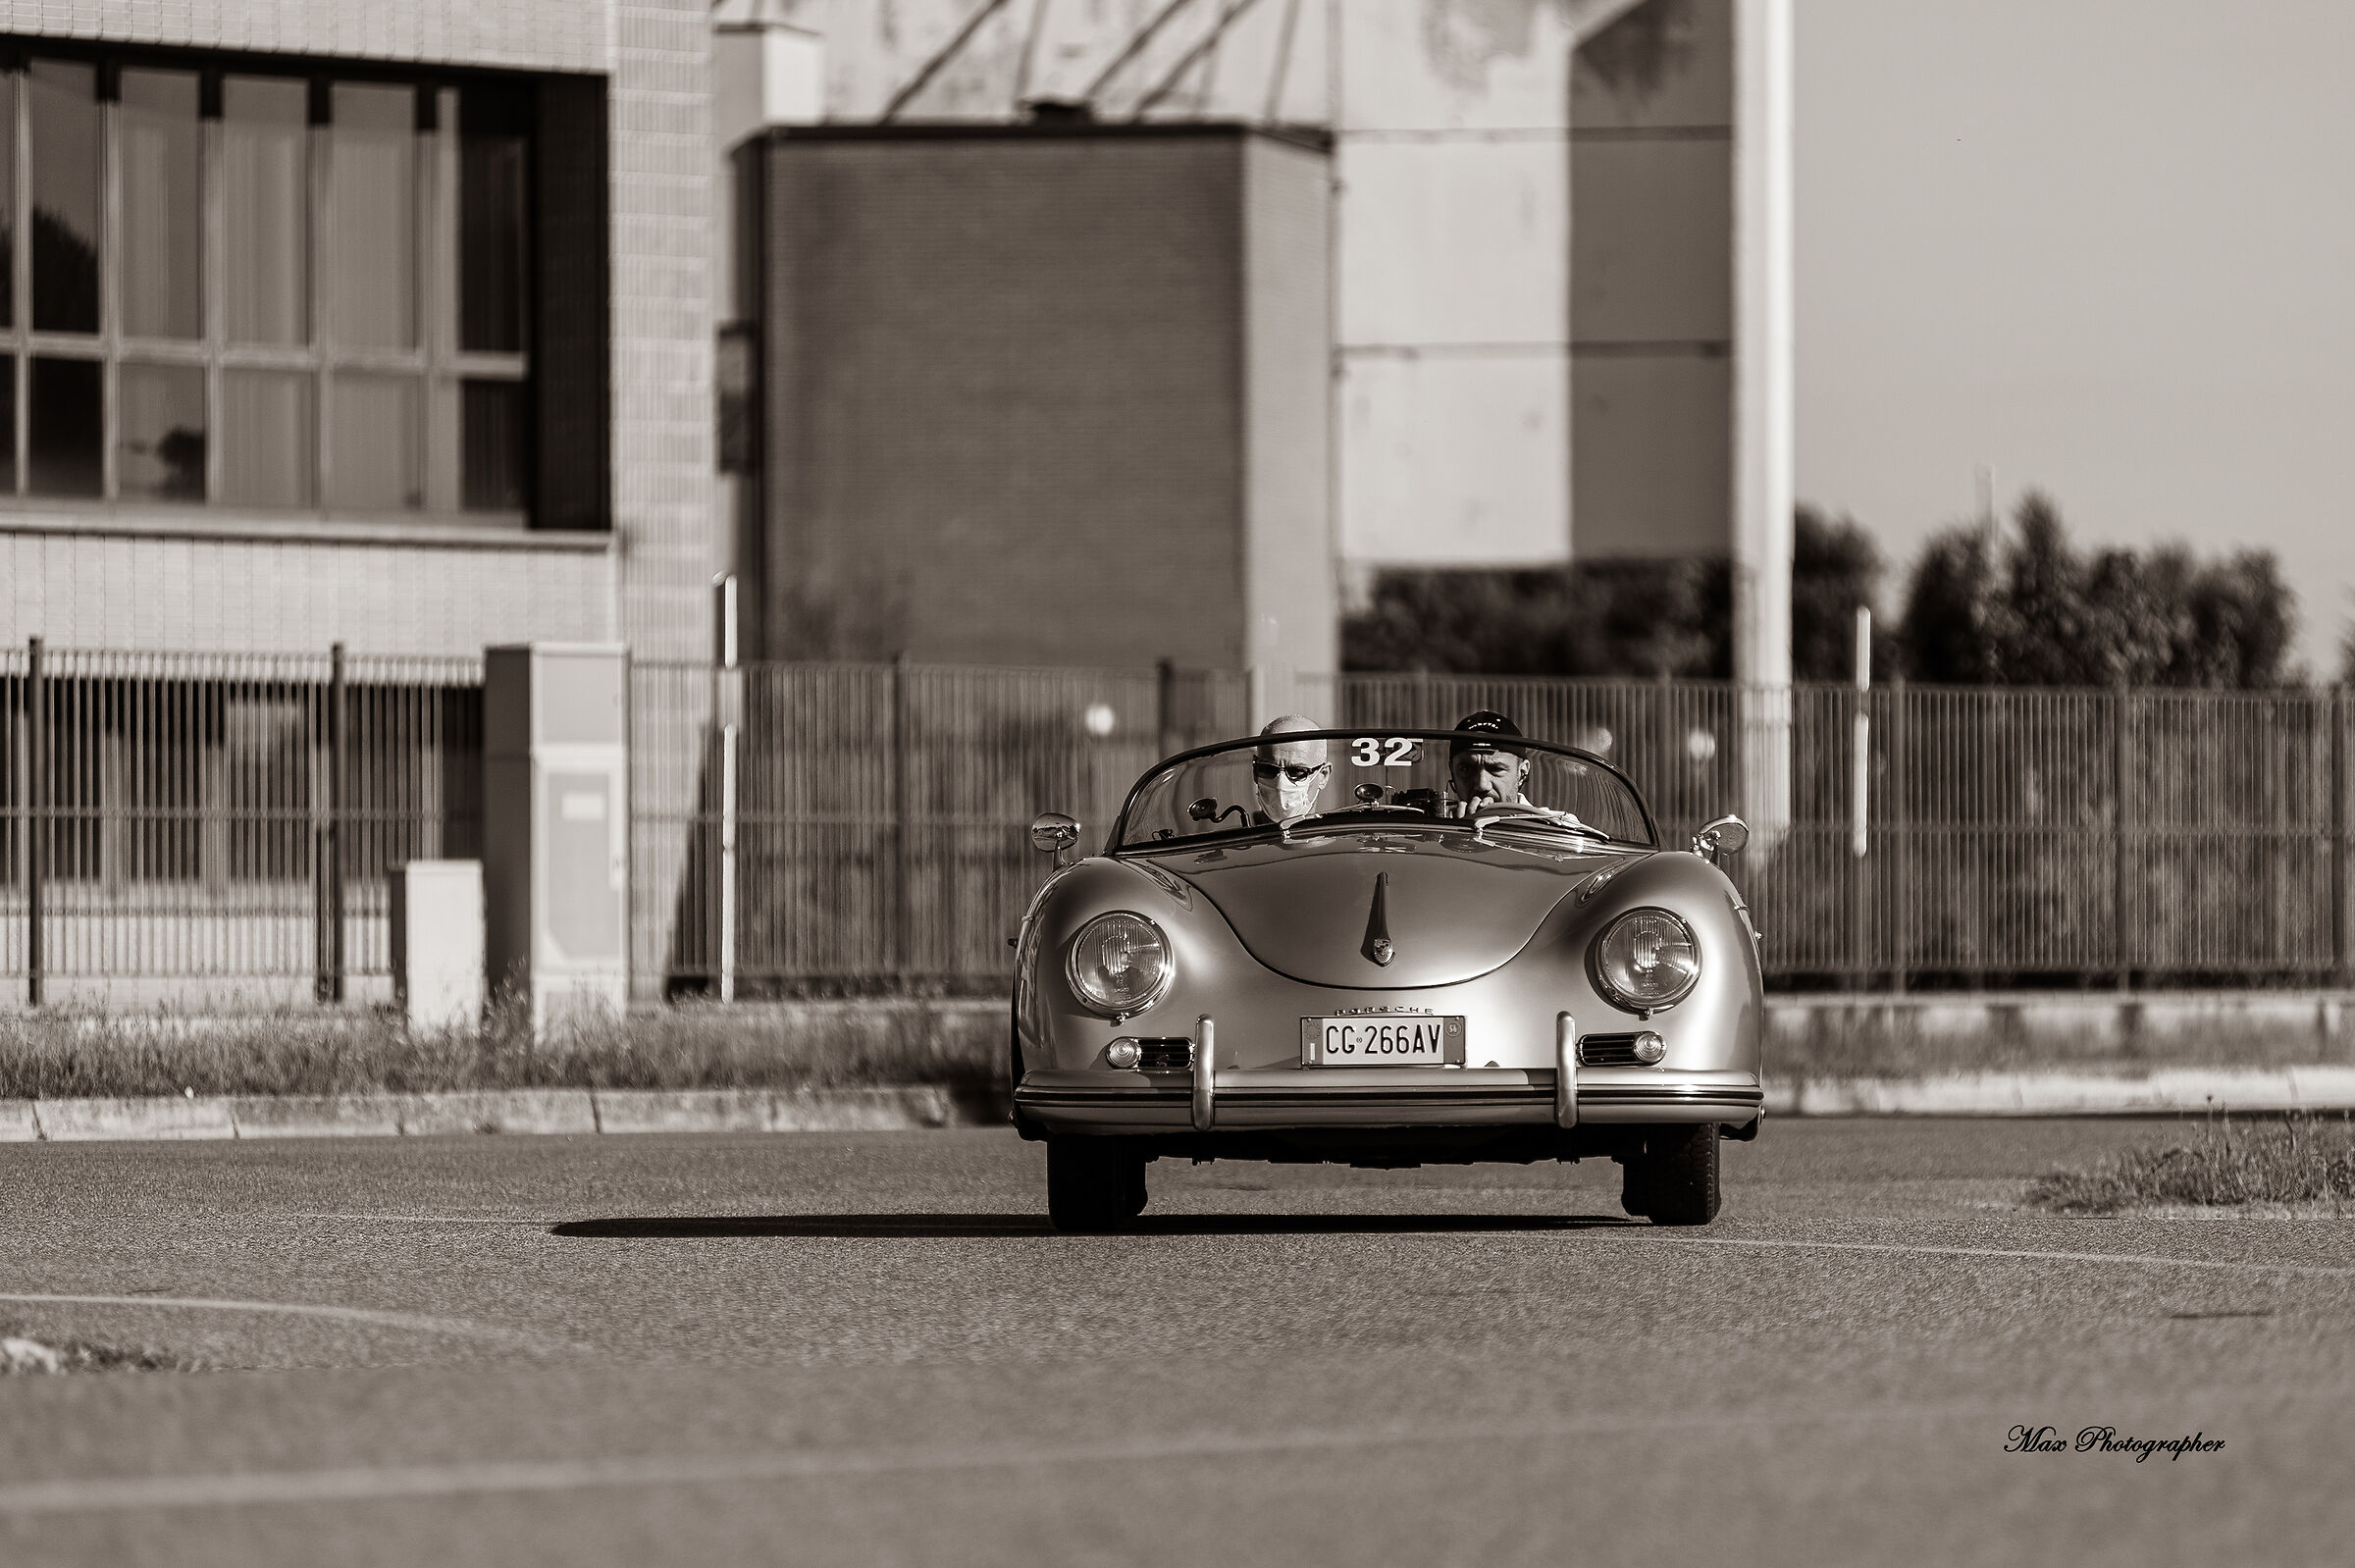 Porsche Speedster on the road - vintage photo...